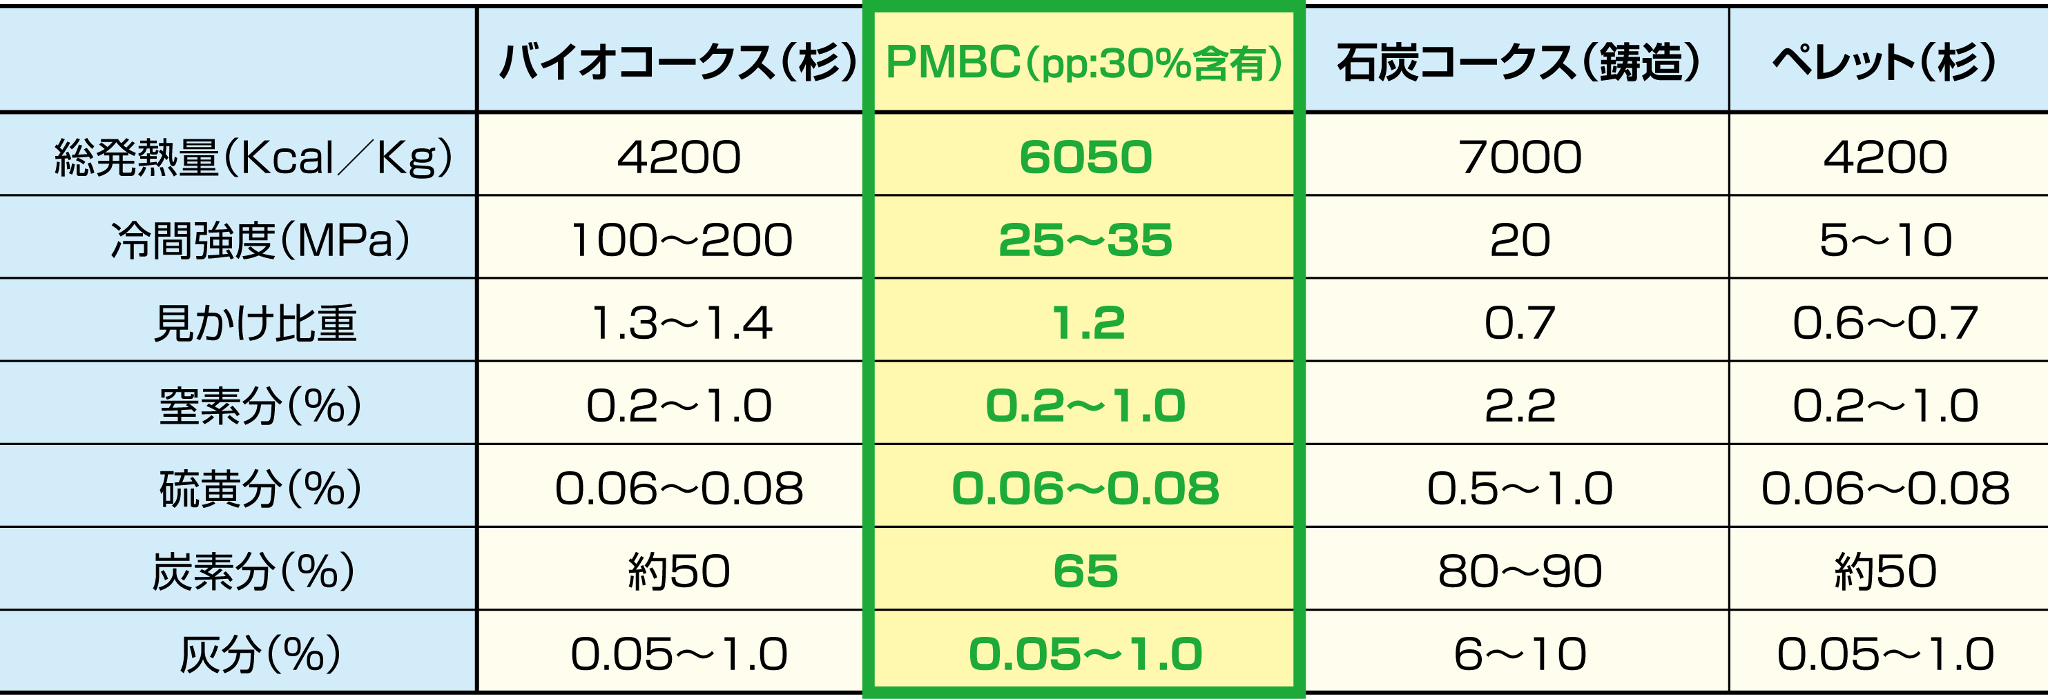 PMBC比較表